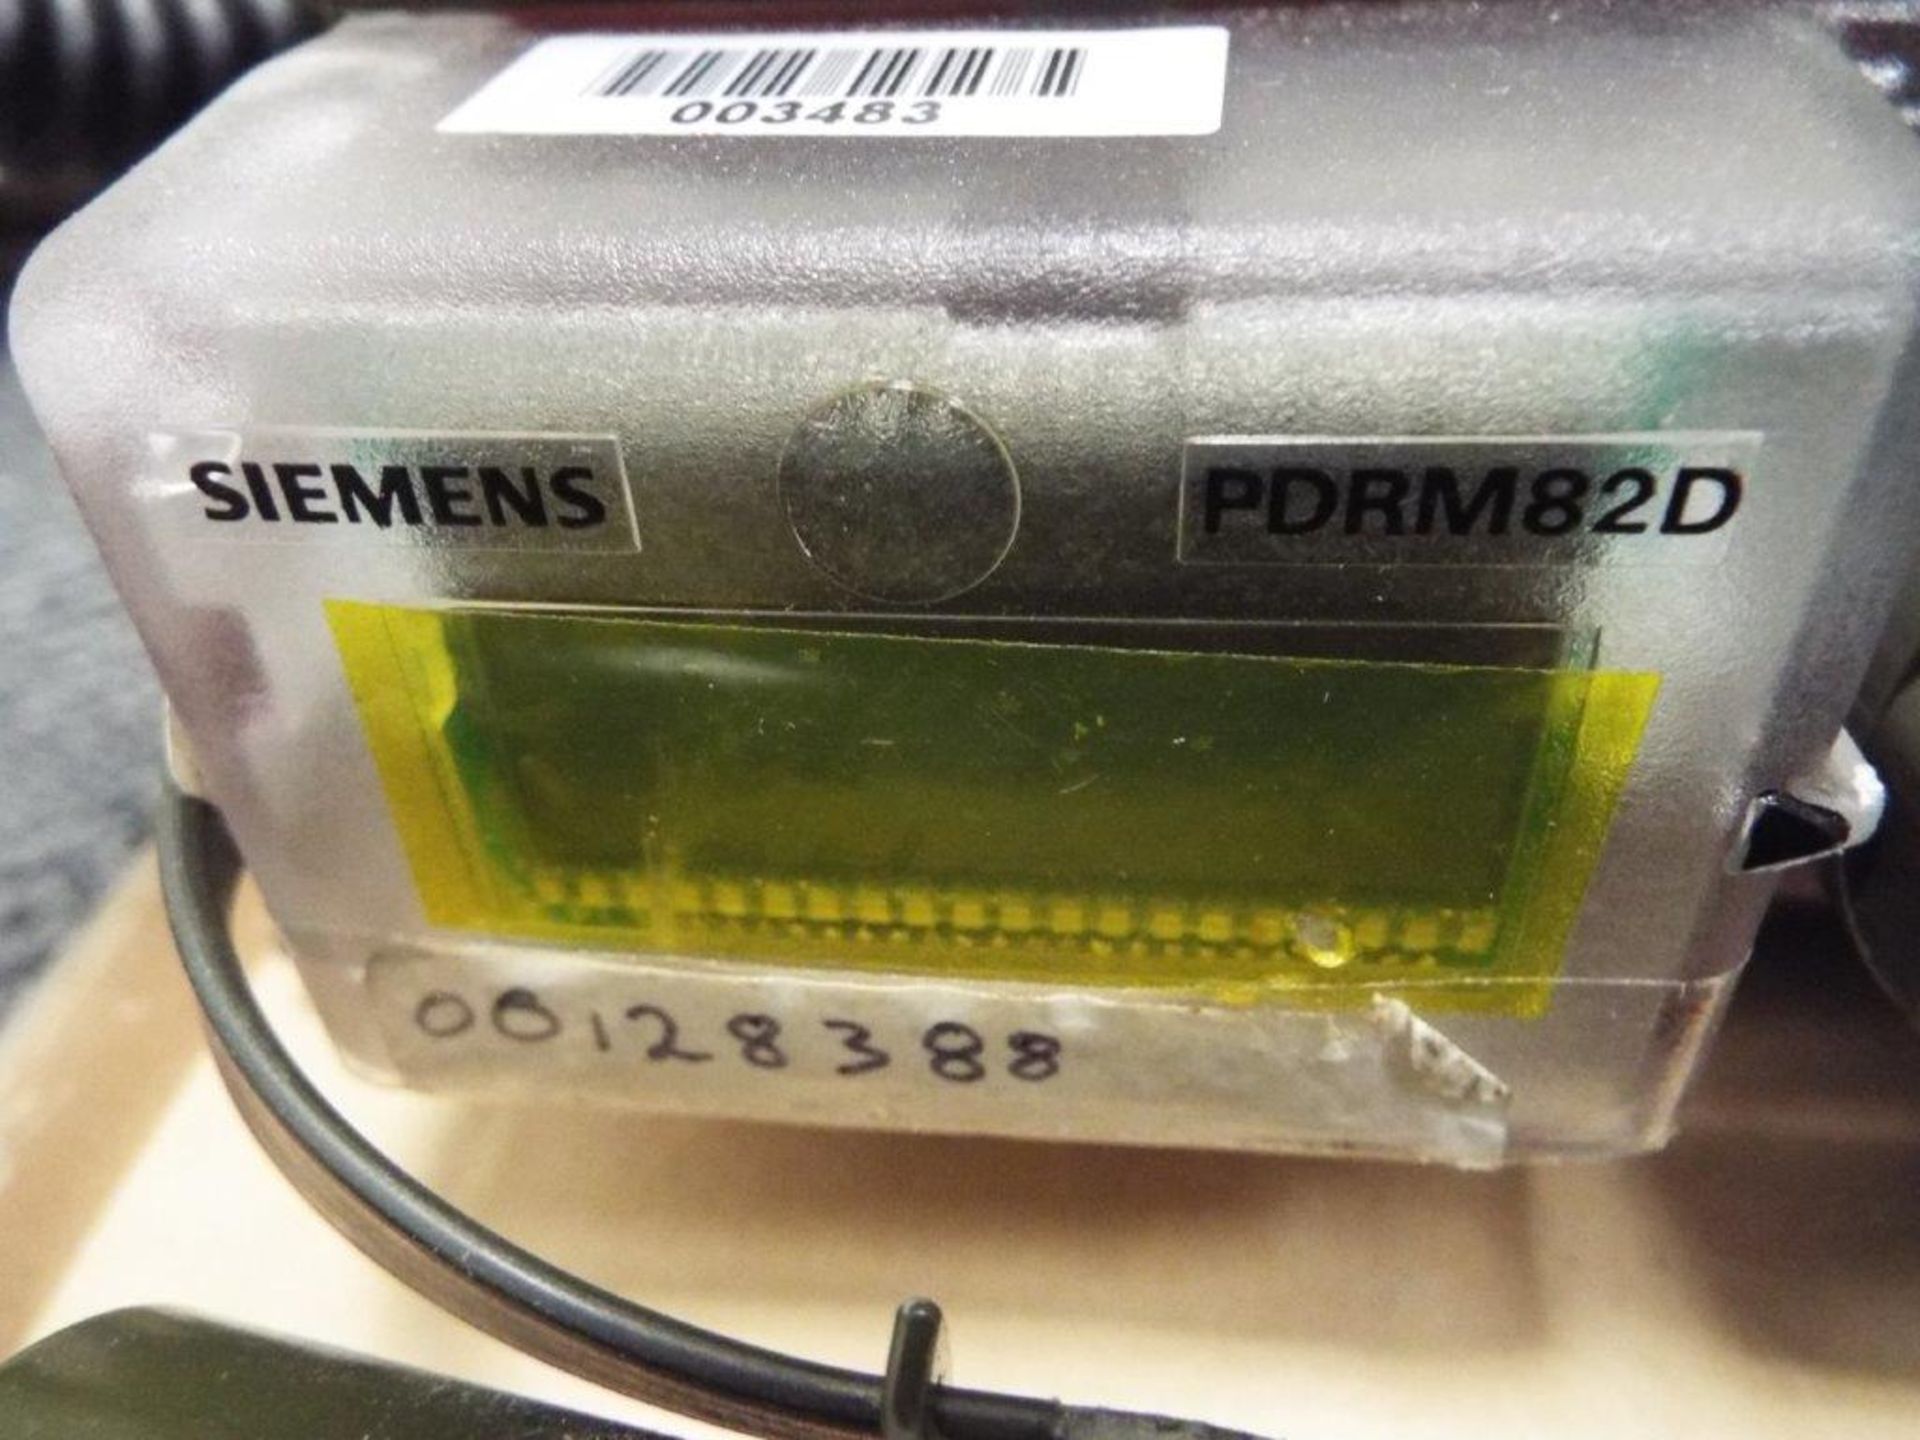 Siemens PDRM82D Portable Dose Rate Meter - Bild 4 aus 10